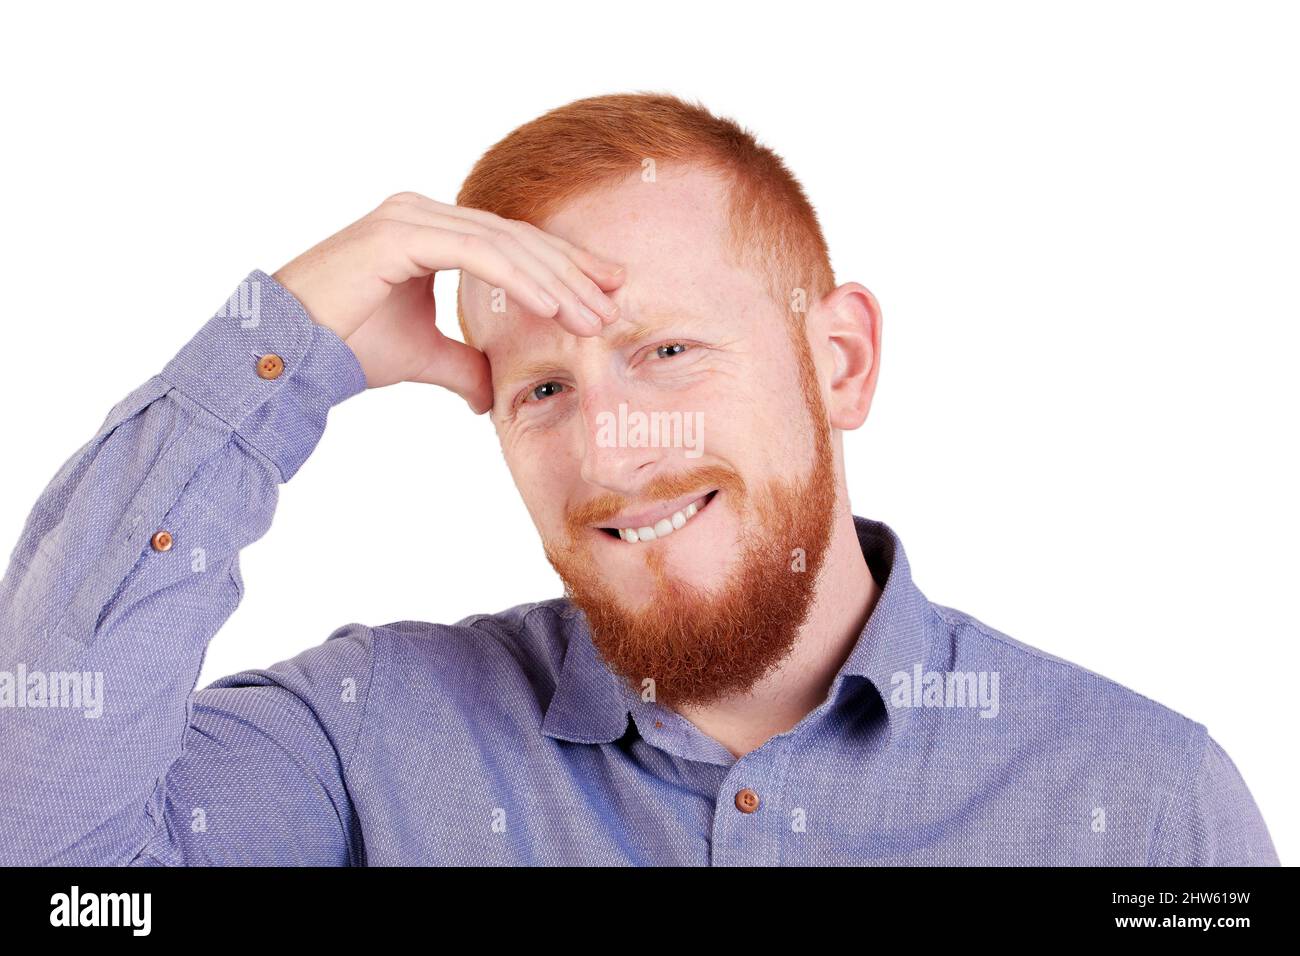 Uomo dai capelli rossi con barba e mal di testa guardando la fotocamera. Foto di alta qualità Foto Stock